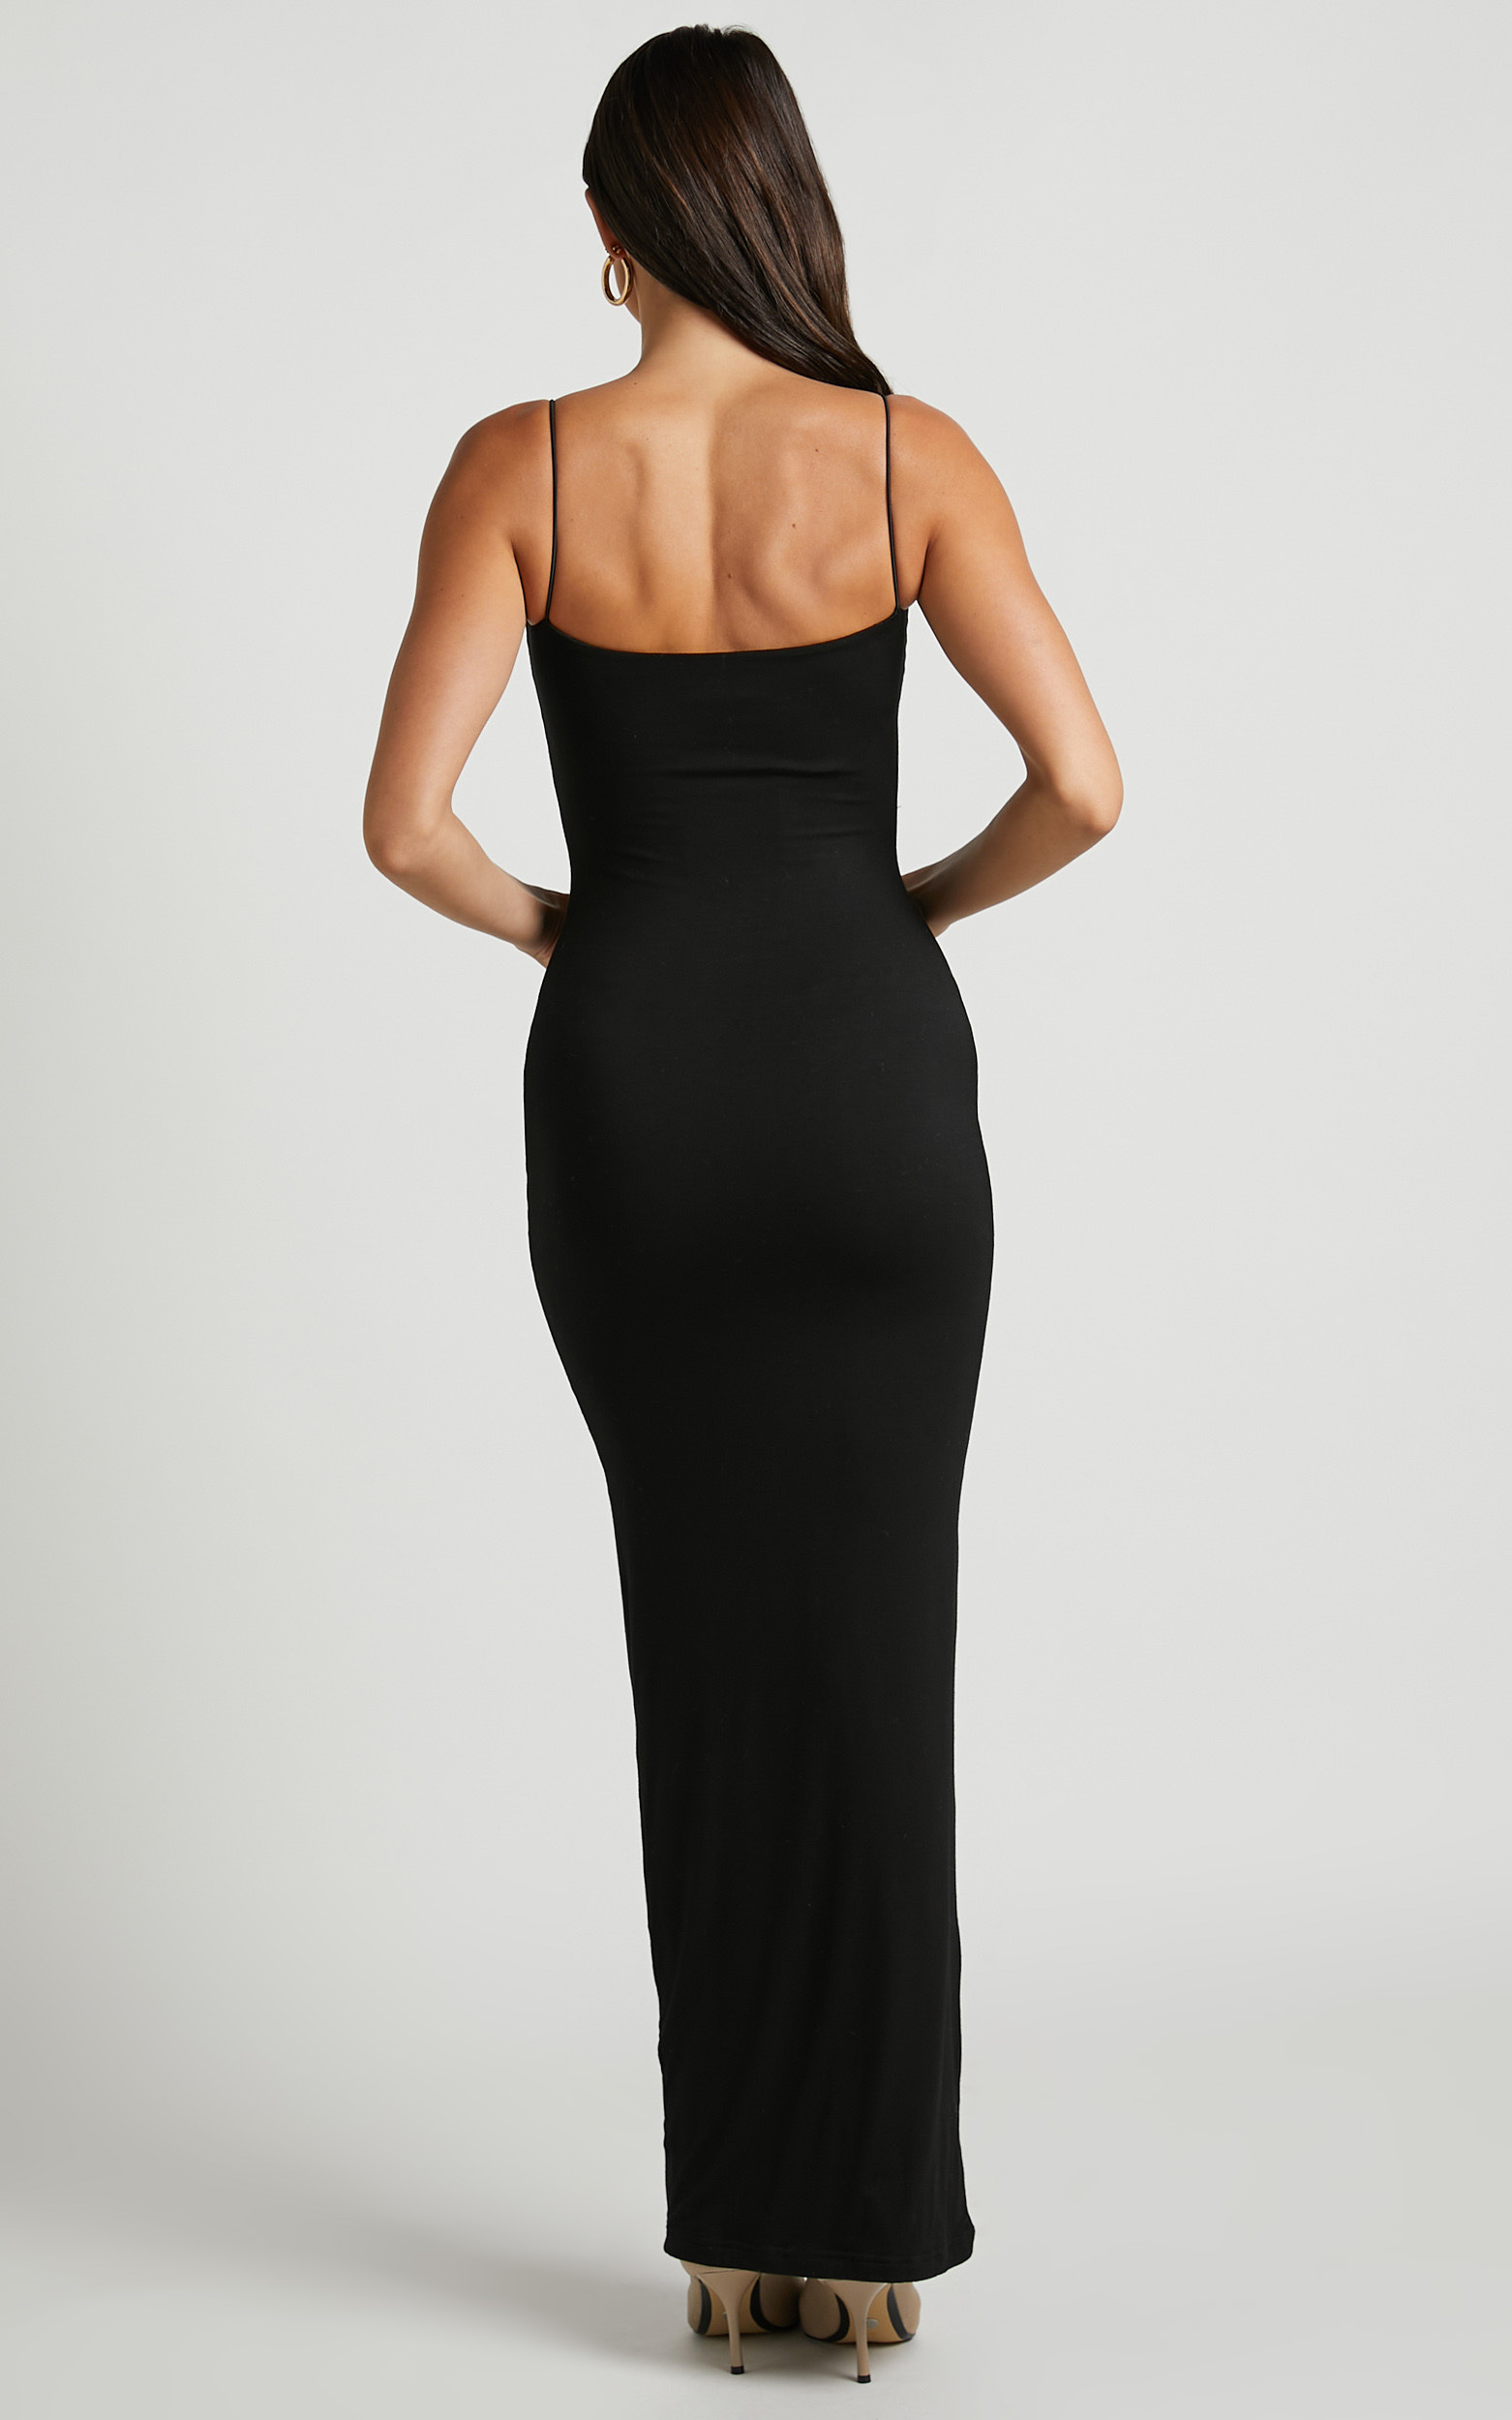 Celene Maxi Dress - Slim Fit Bodycon Dress in Black | Showpo